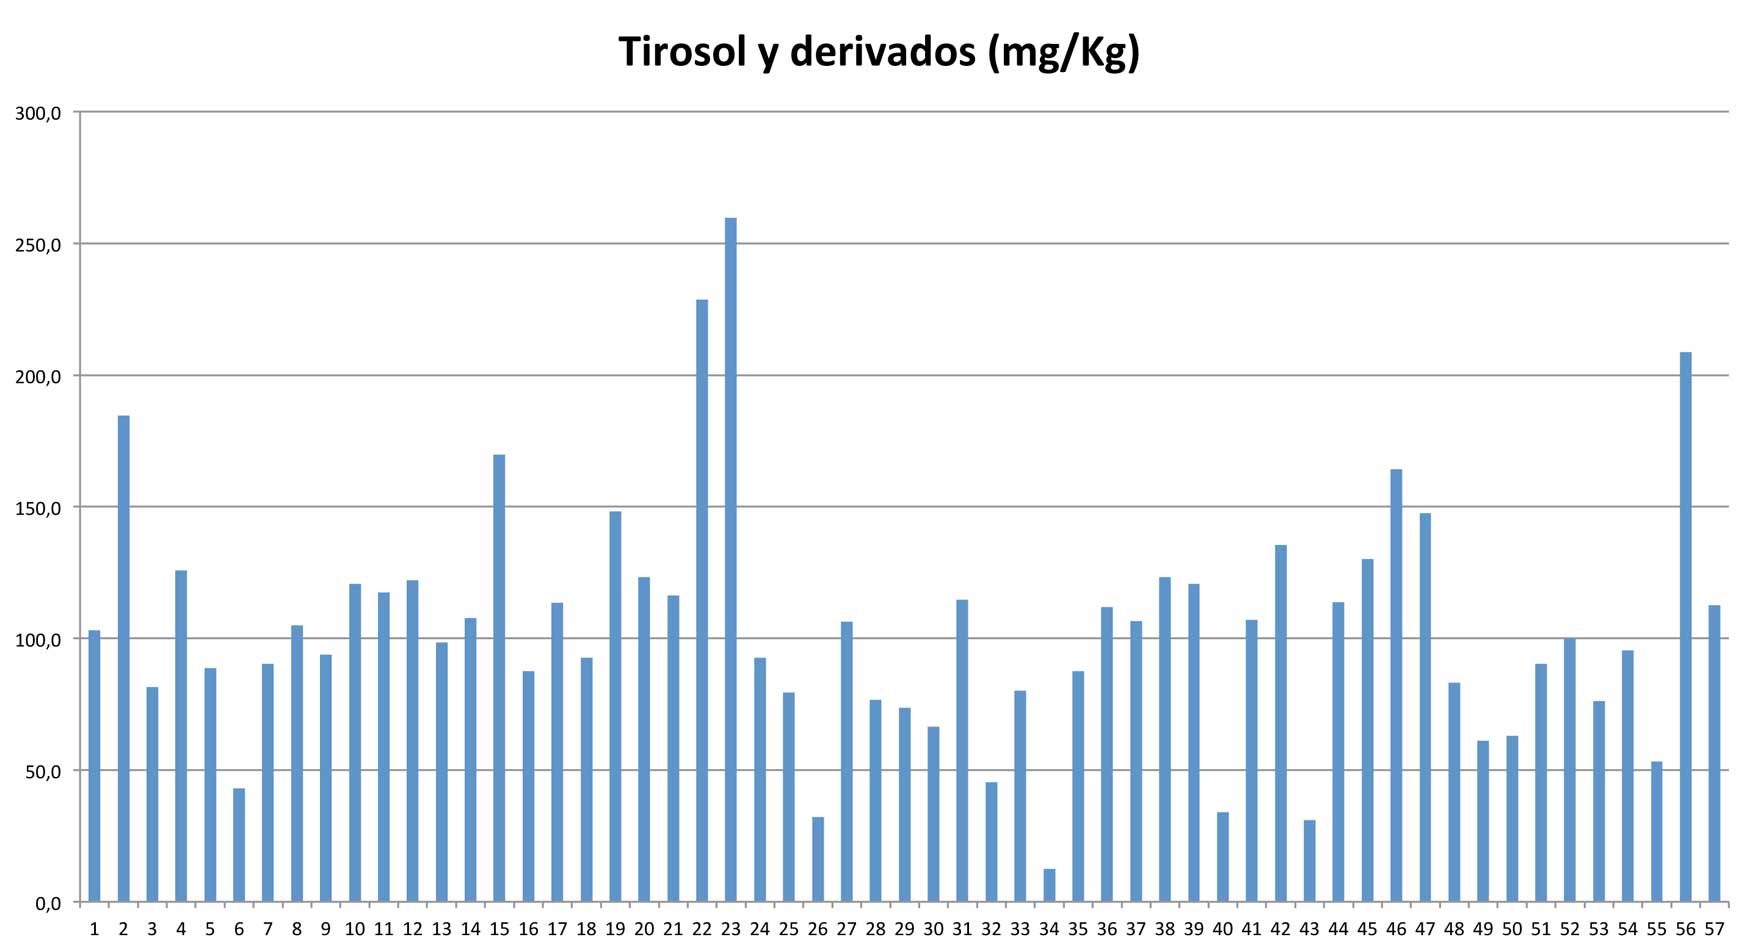 Grfico 2: Tirosol y derivados